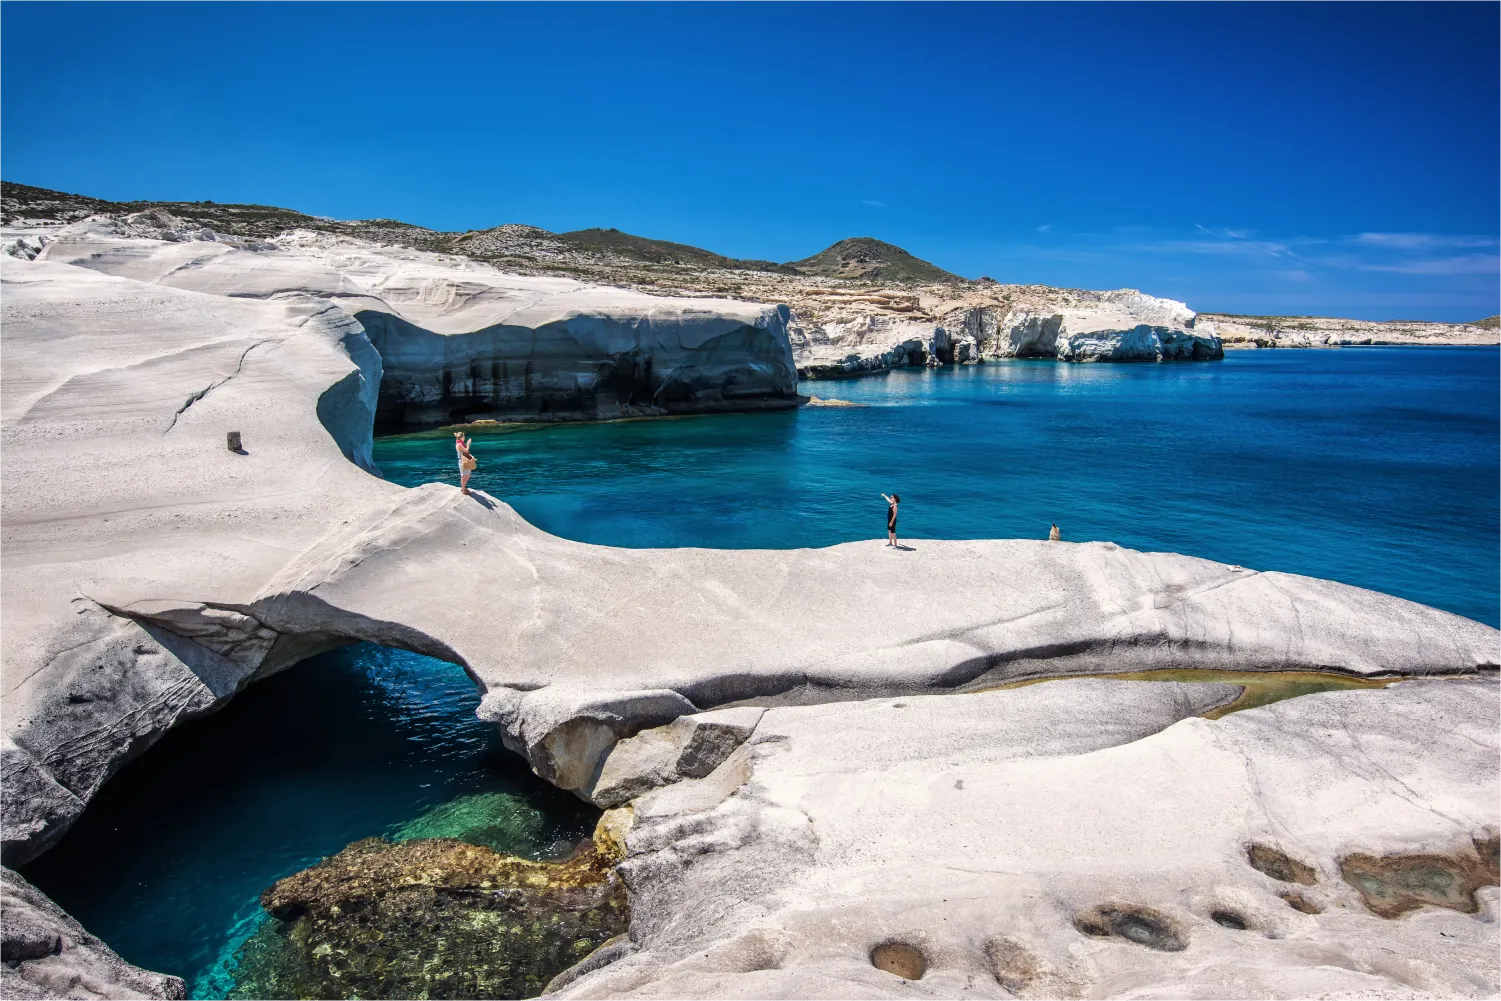 La magnifique plage de Sarakiniko à Milos avec ses rochers blancs et ses eaux bleues